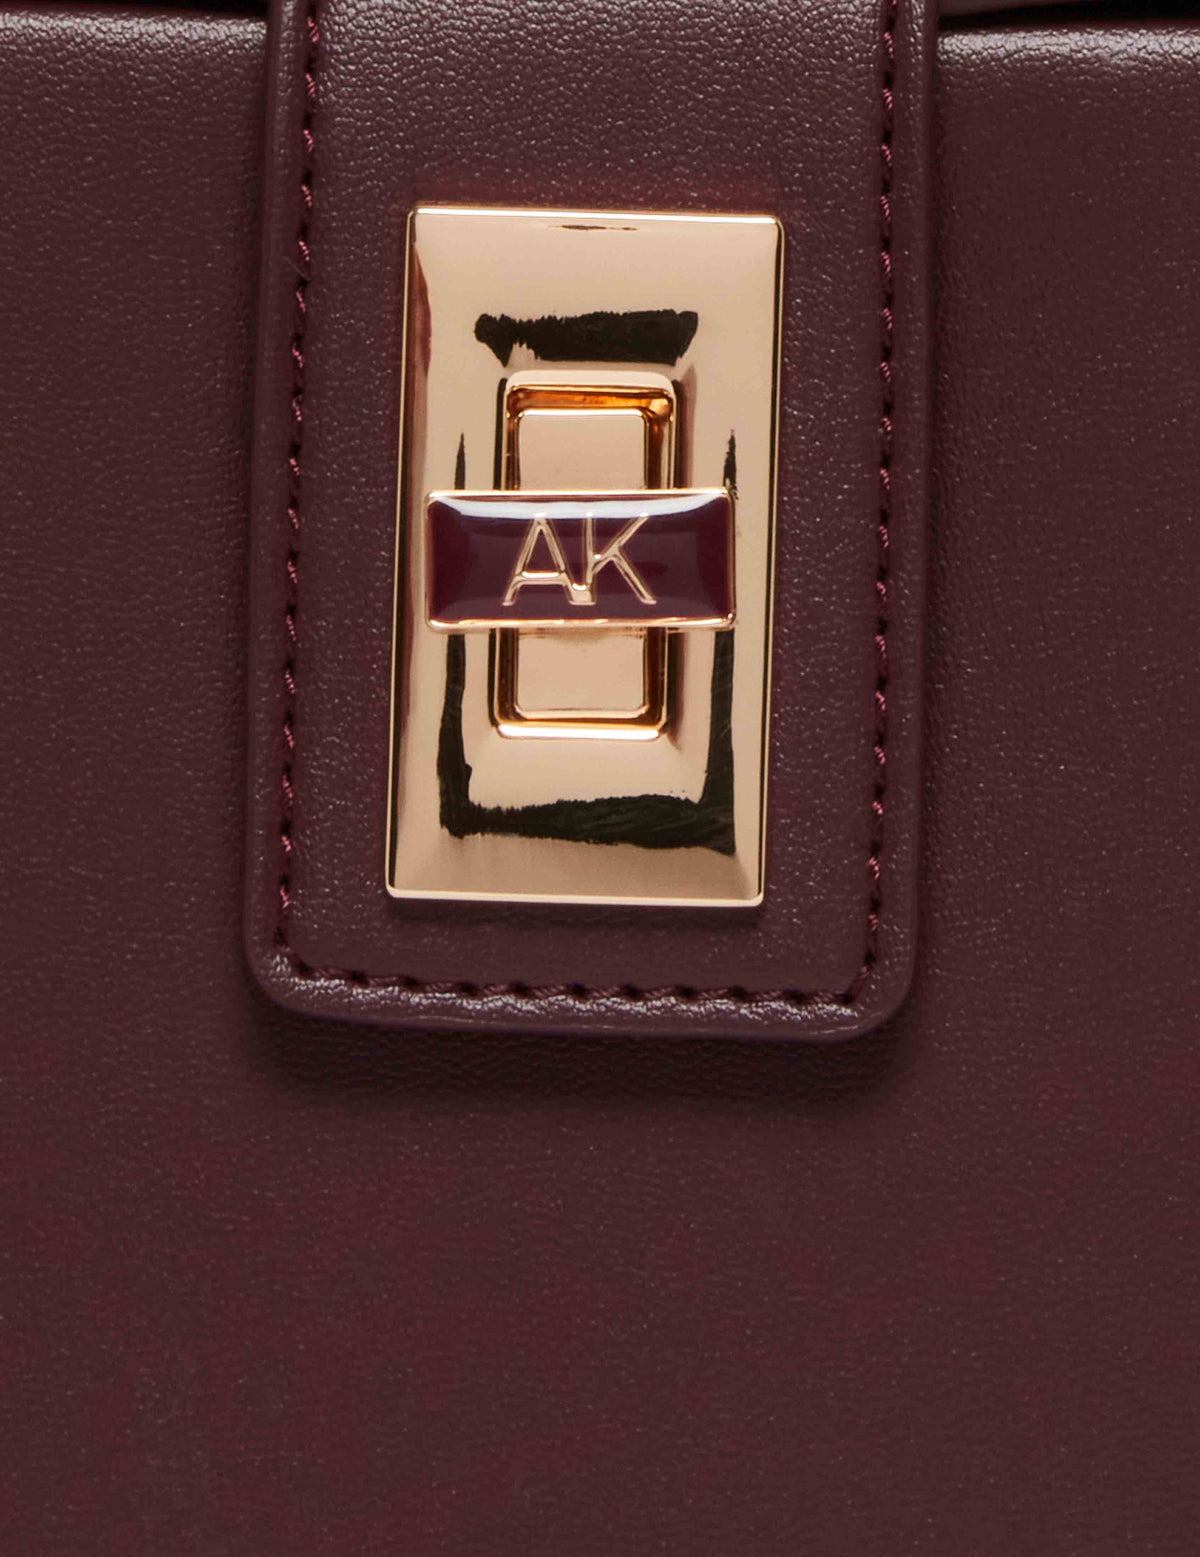 Anne Klein  Convertible Box Bag With AK Enamel Turn Lock